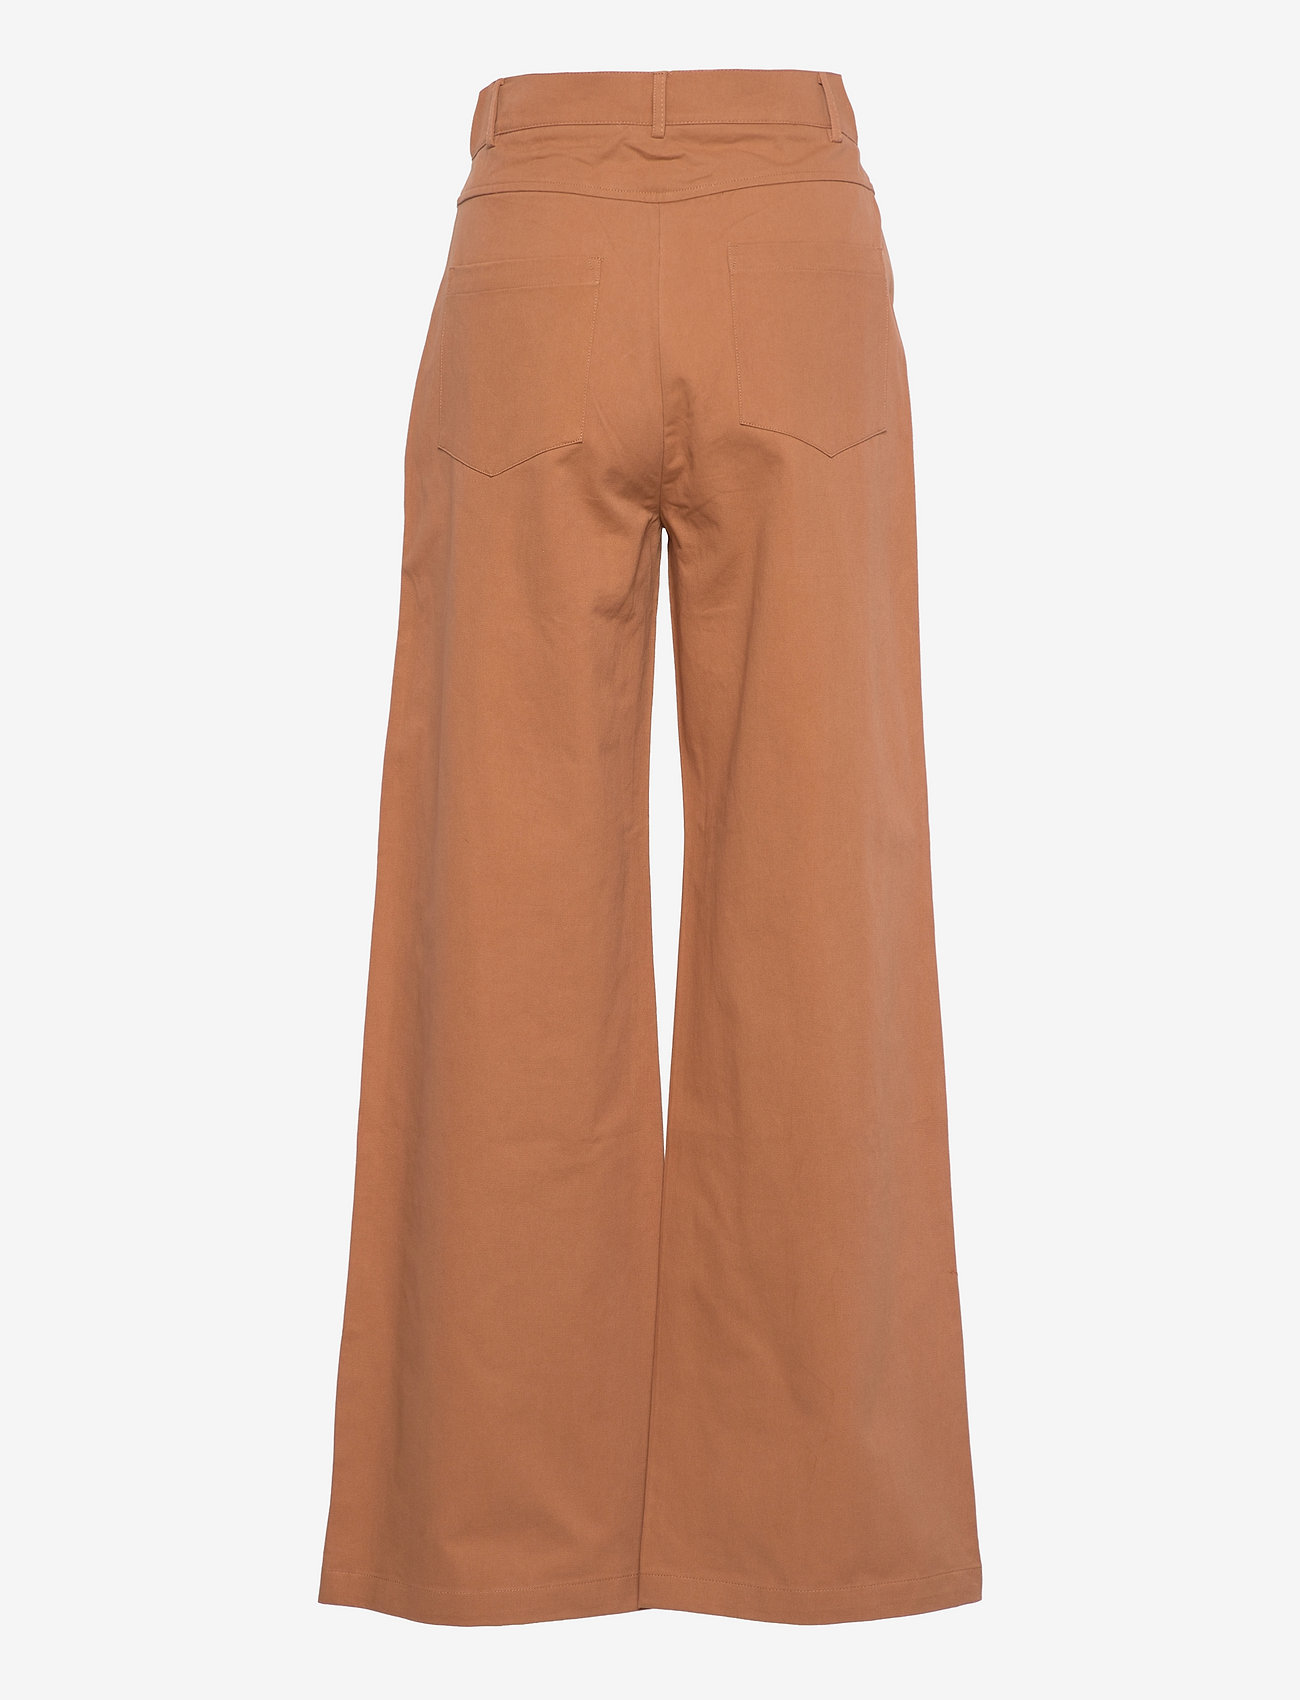 nué notes - Gosta Pants - bukser med brede ben - rust brown - 1